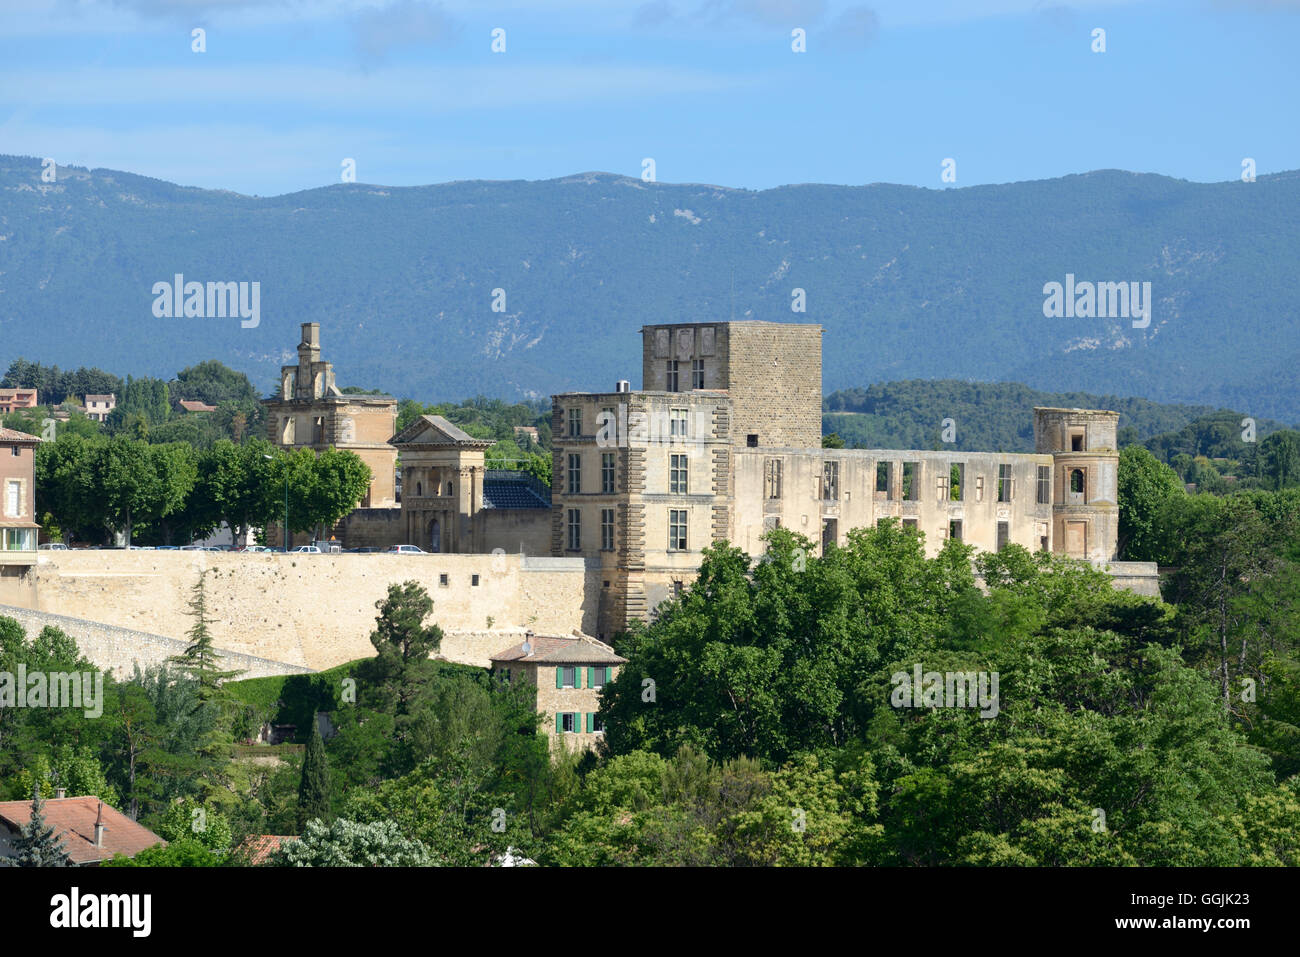 Vistas a las ruinas del castillo renacentista de La Tour d'Aigues en el parque regional de Luberon Provence Francia Foto de stock